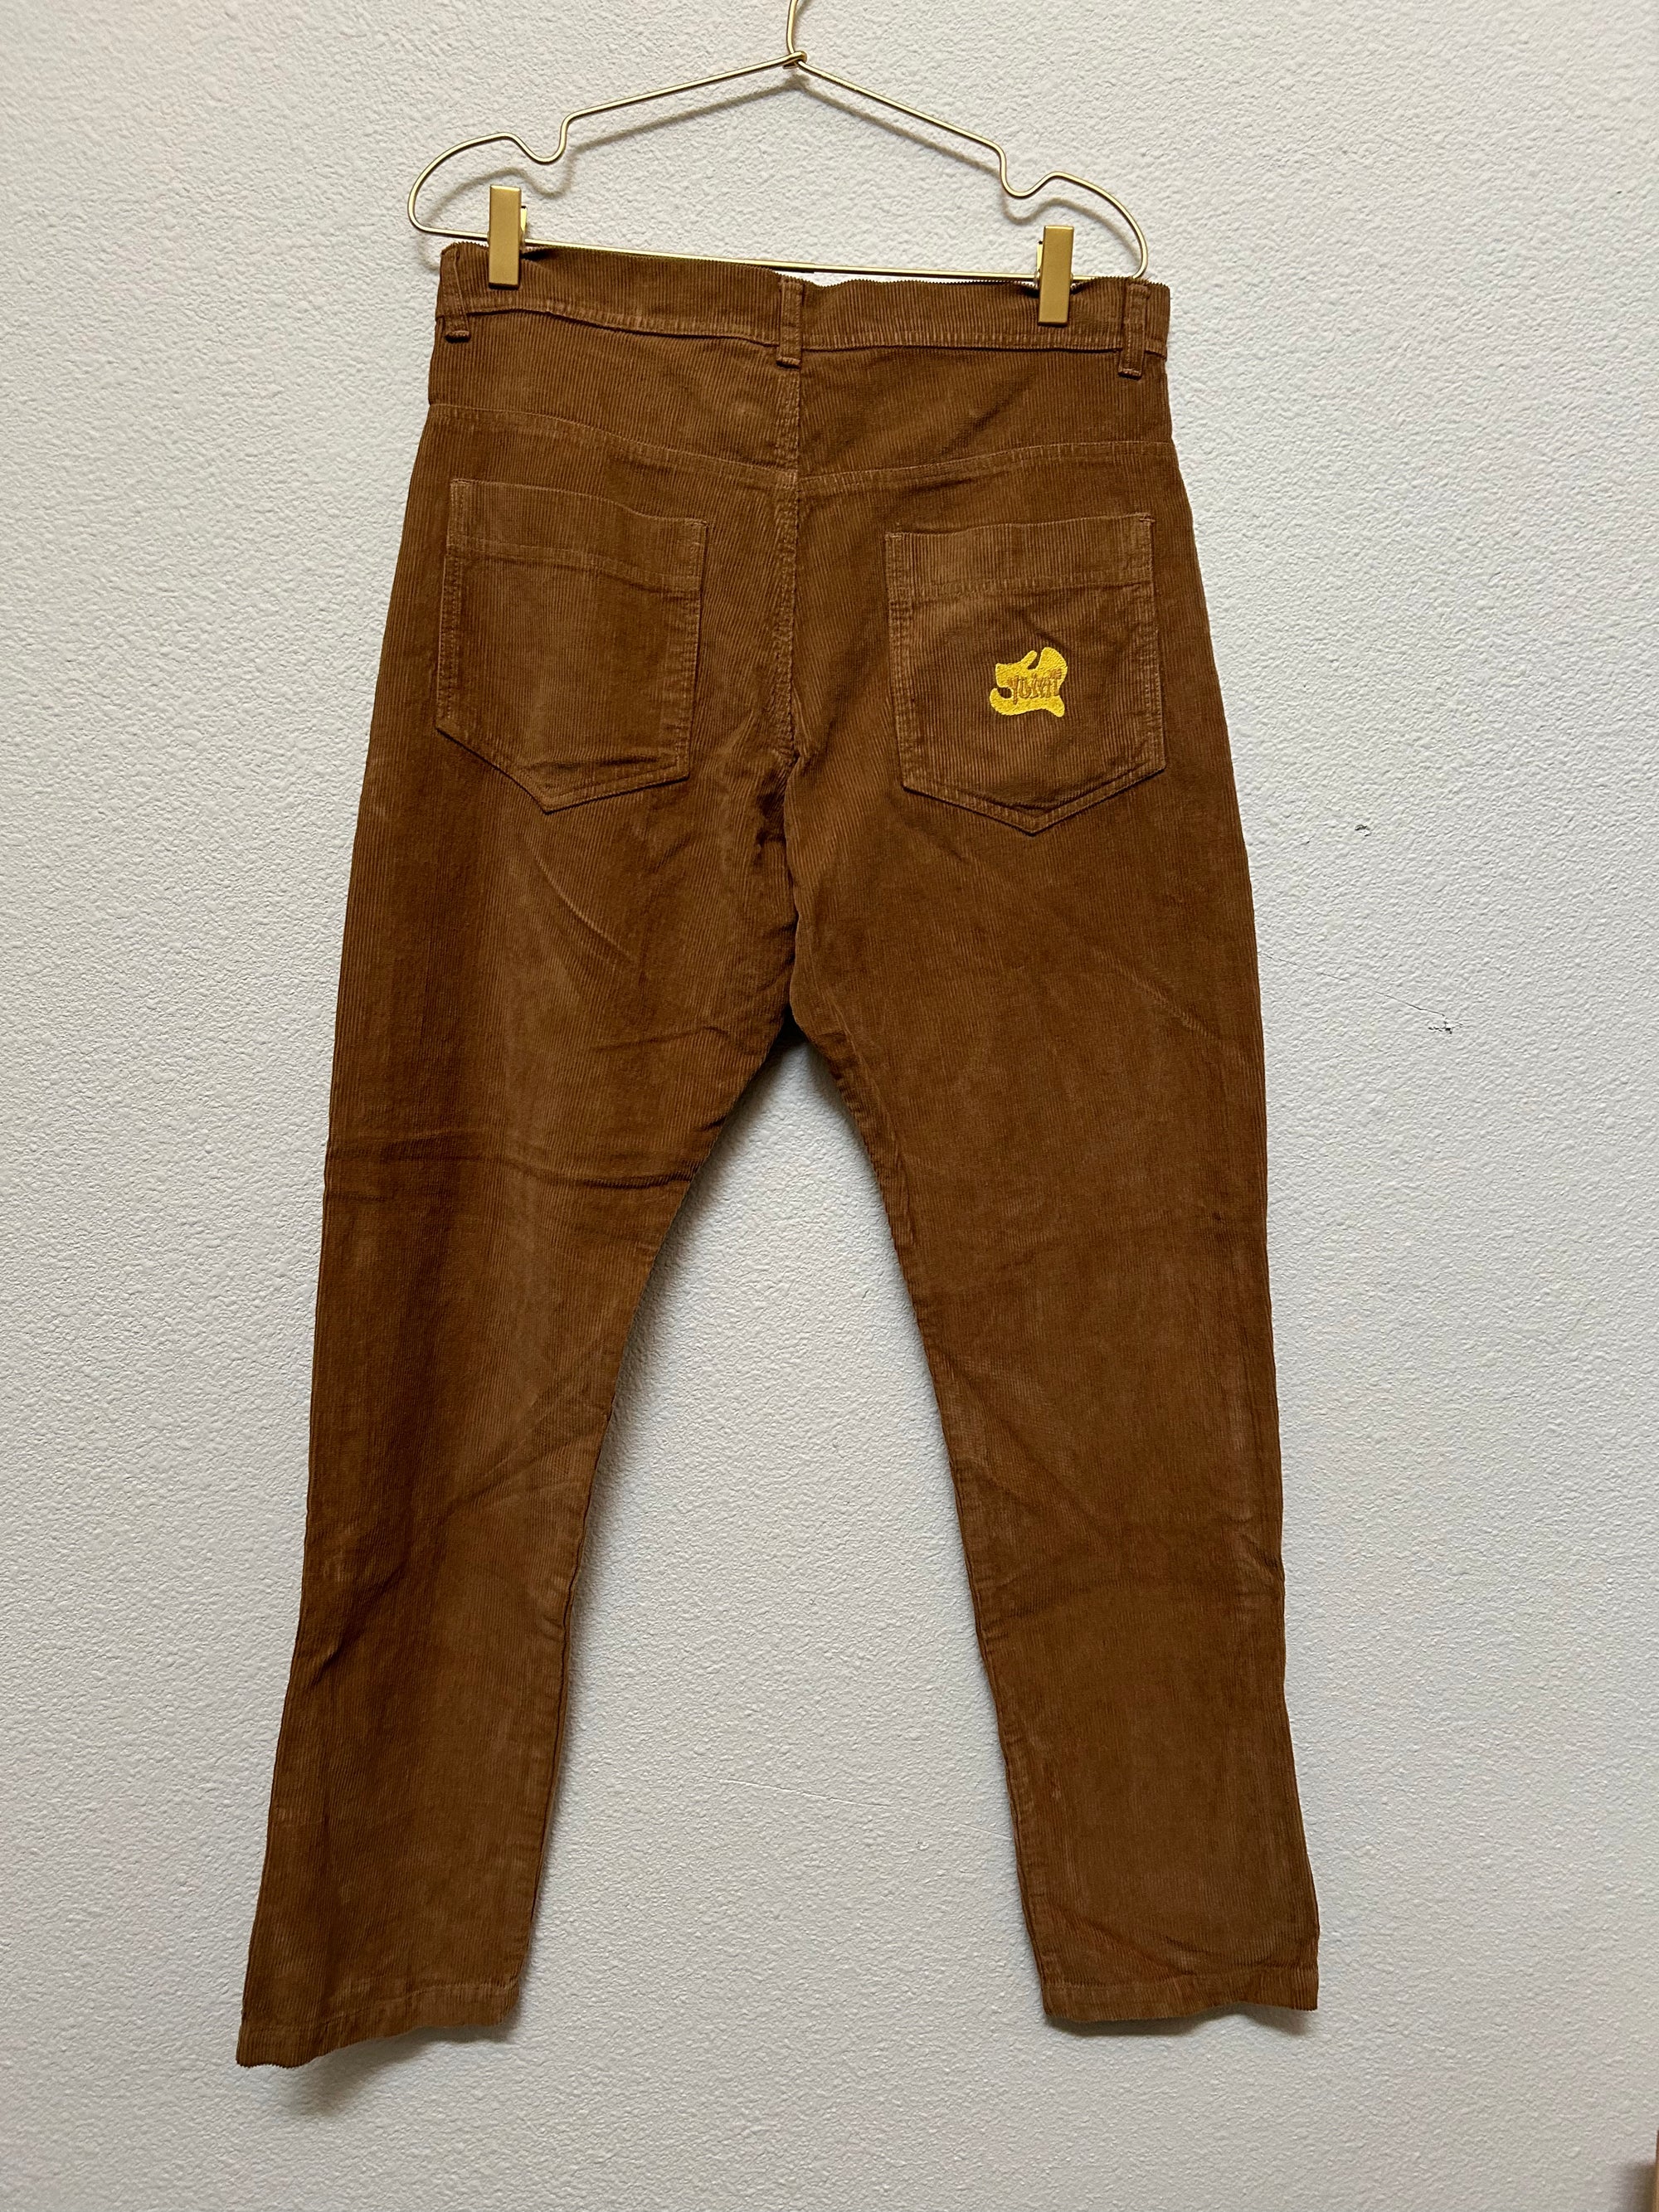 Yoint Cord Pants in Brown